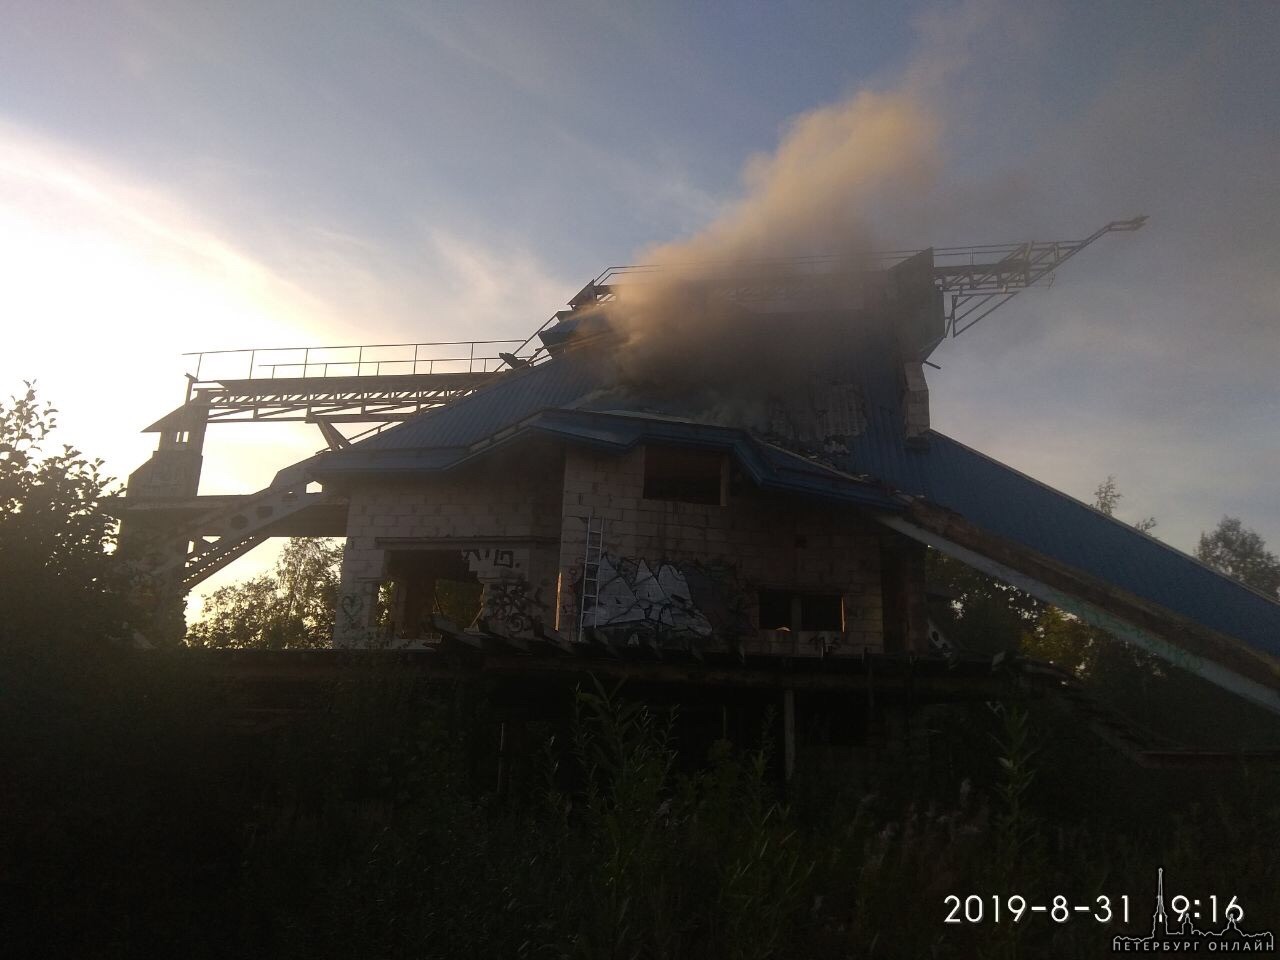 Выборгское Шоссе 148 на берегу Суздальского озера, горит уже 2 часа дом. 3 пожарных машины тушат без...